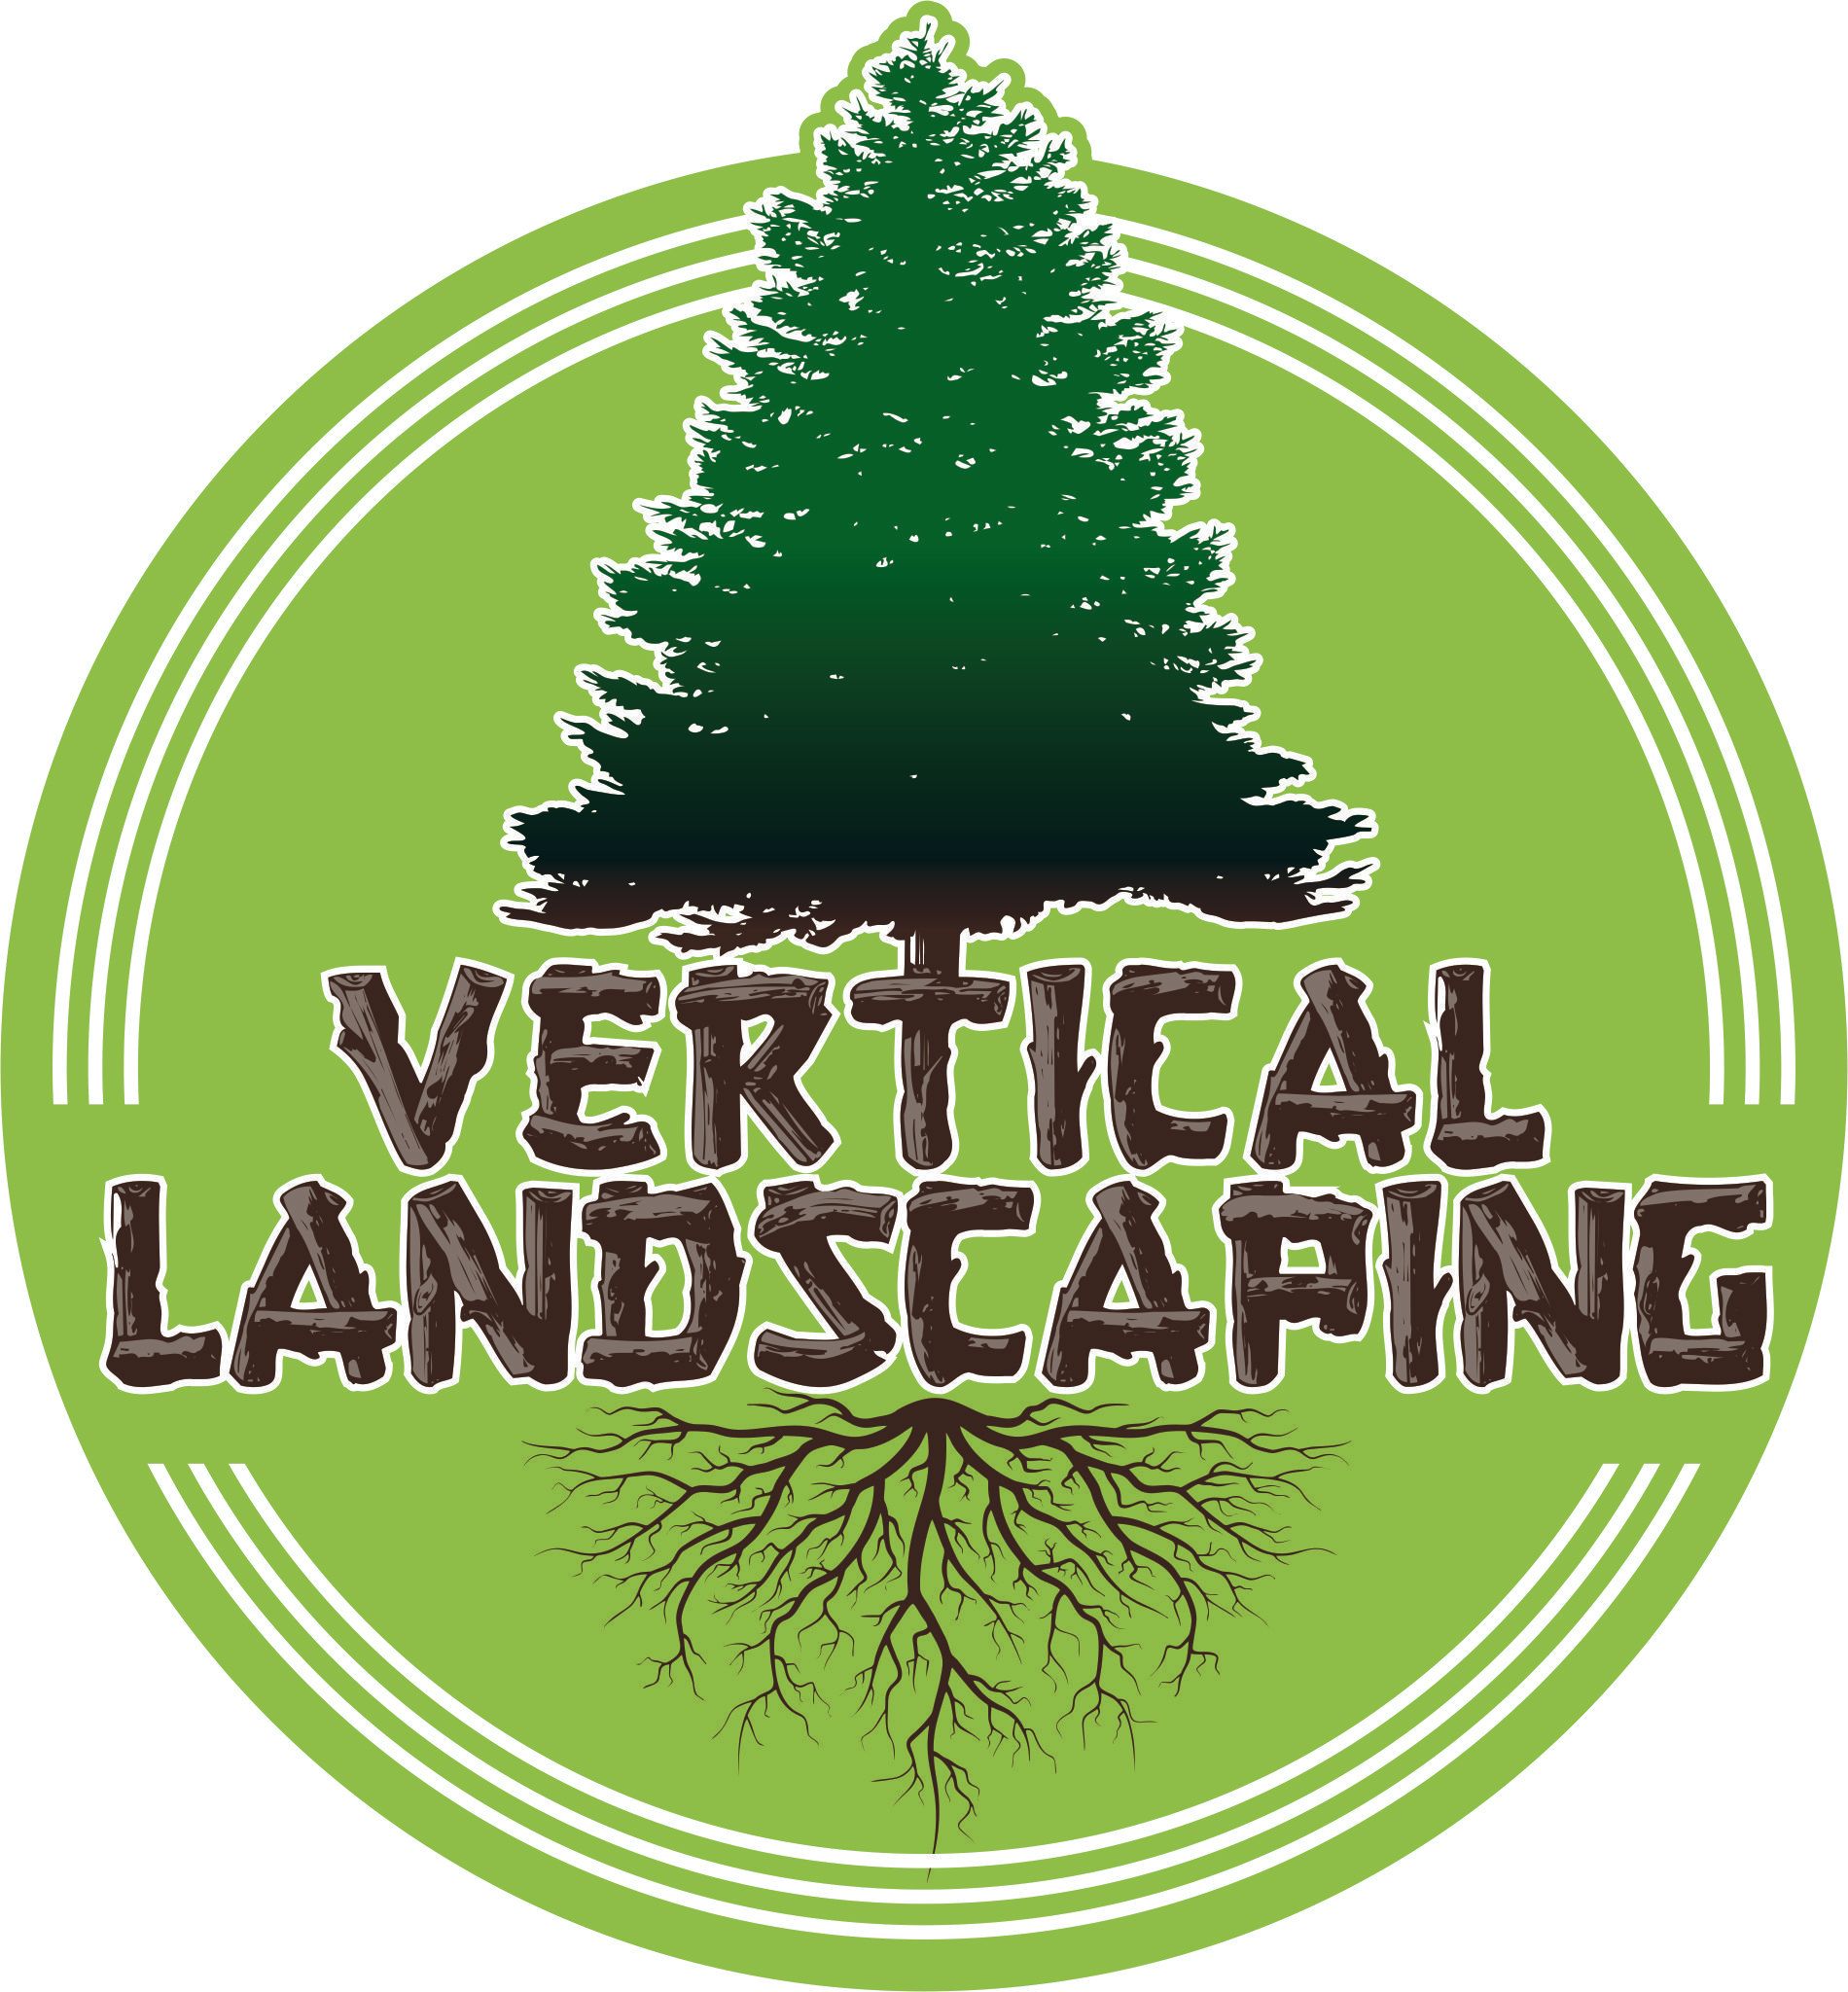 Vertical Landscaping Logo